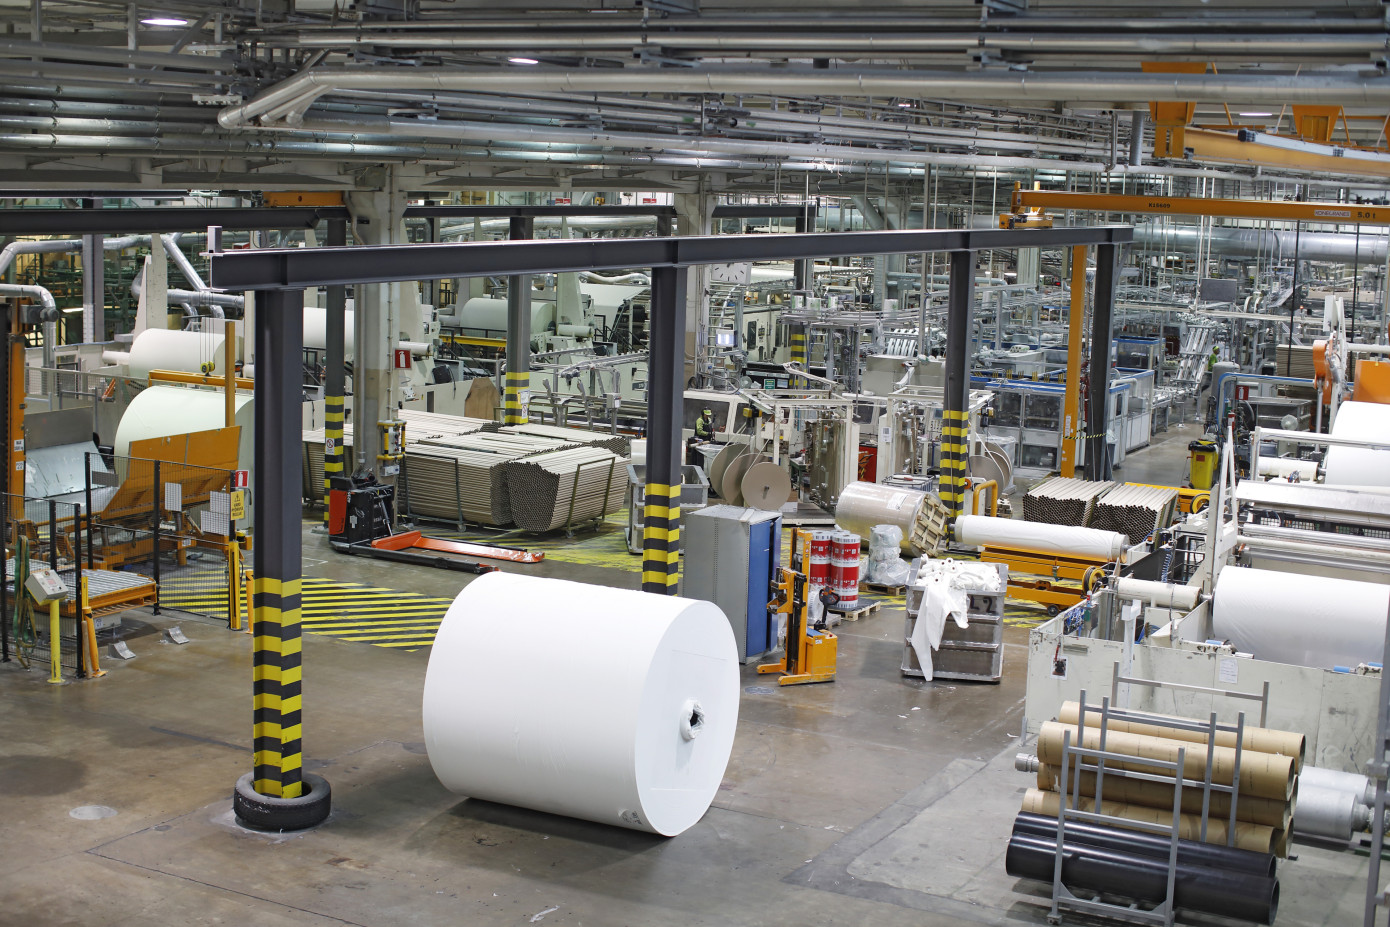 Metsa Tissue модернизировала бумагоделательную машину на заводе в Финляндии